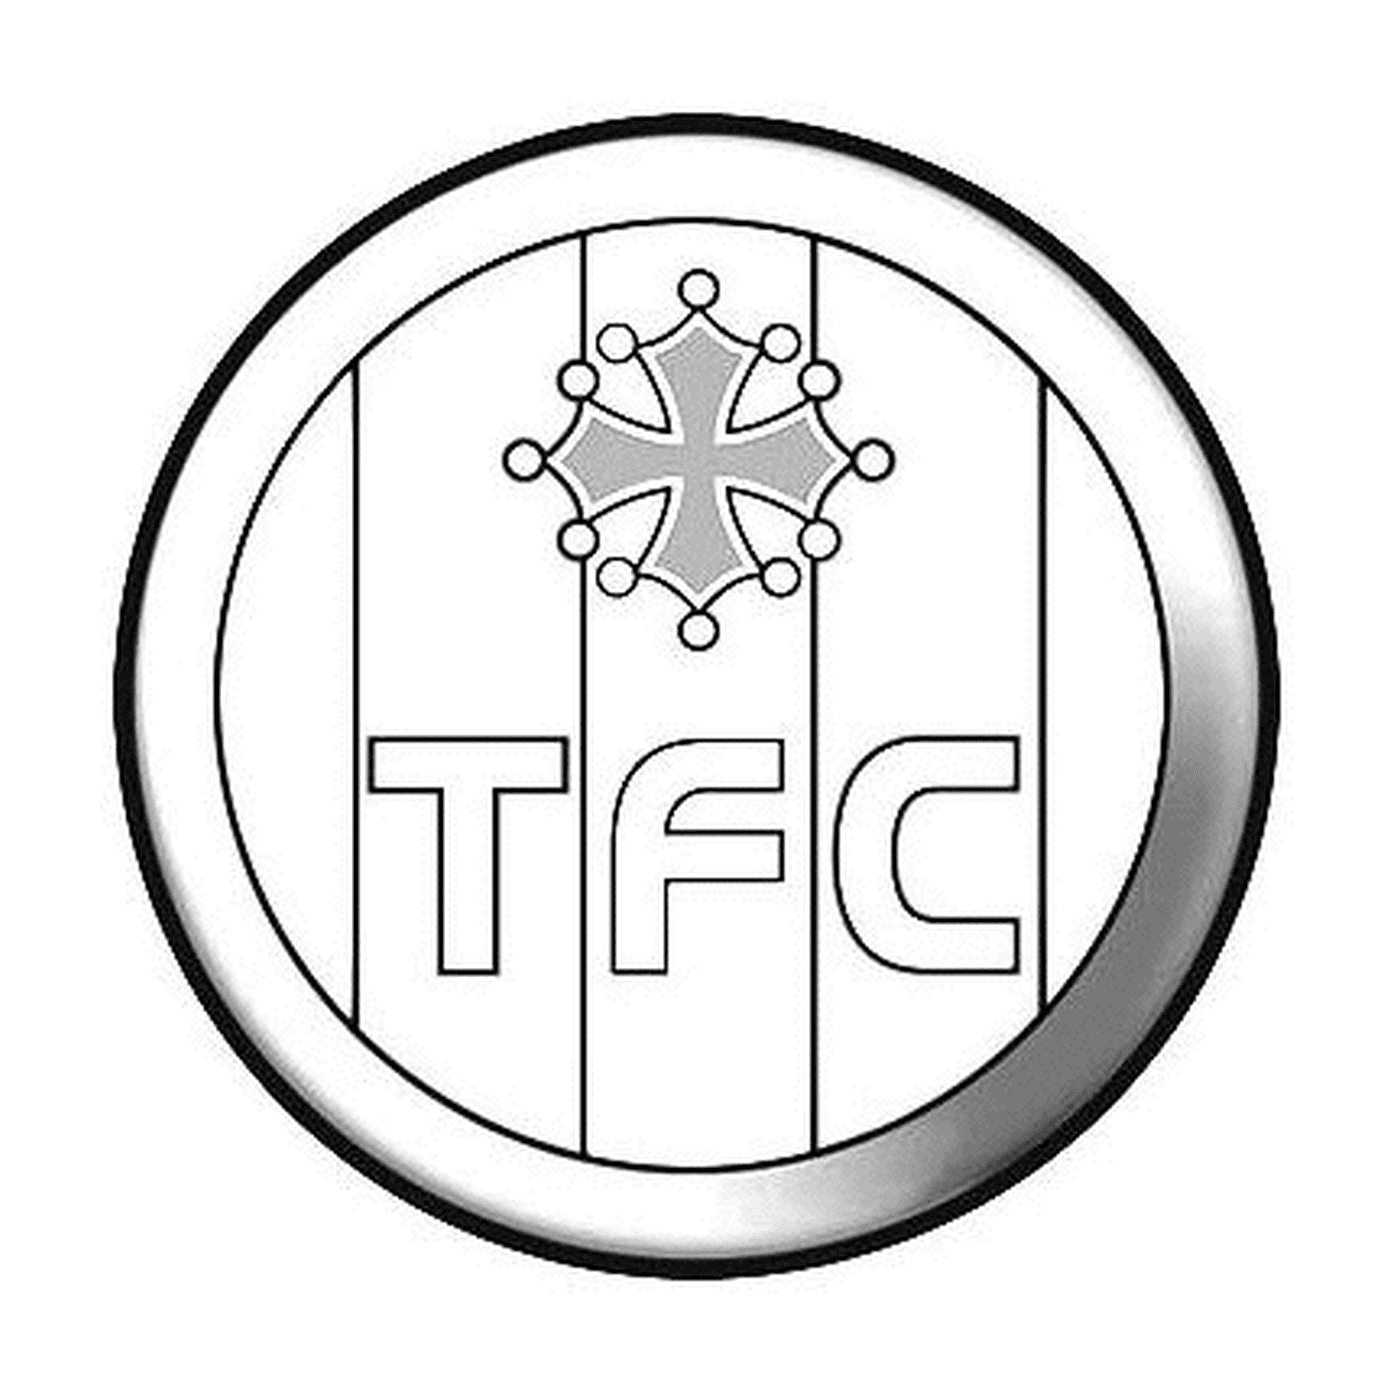  Logo Tolosa 